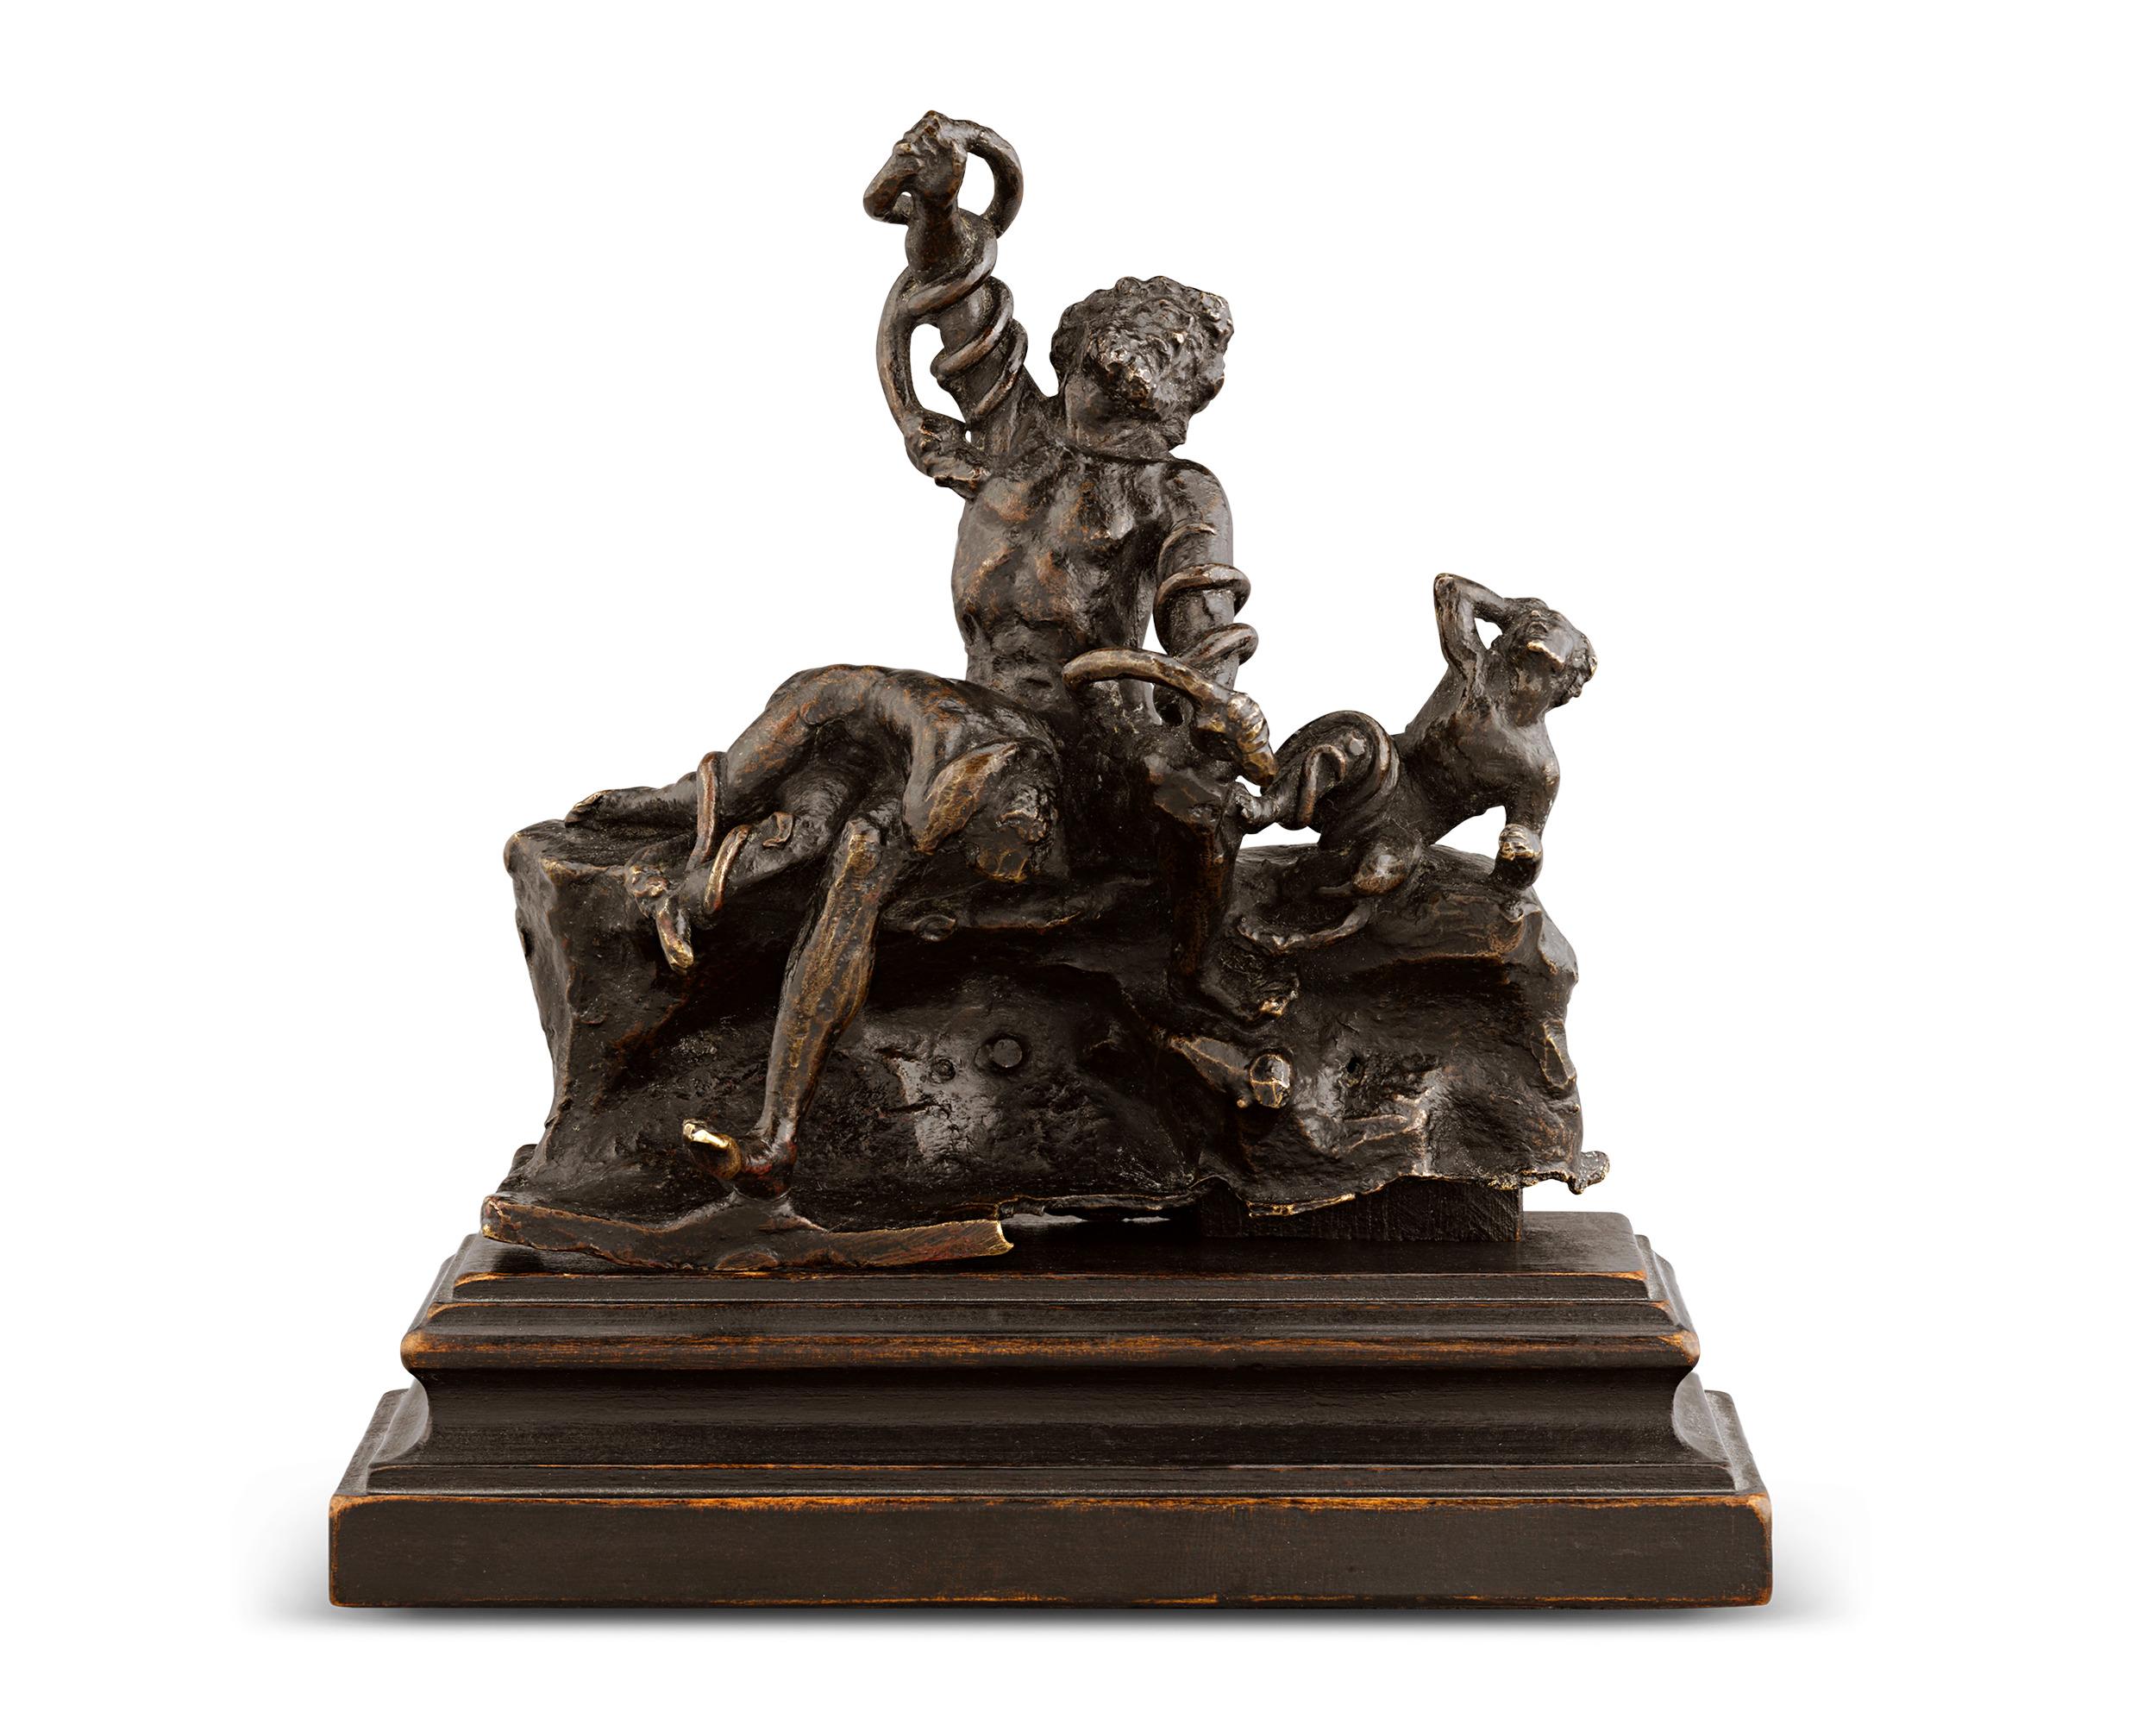 Adriaen de Vries Figurative Sculpture - Laocoön And His Sons By Adriaen De Vries